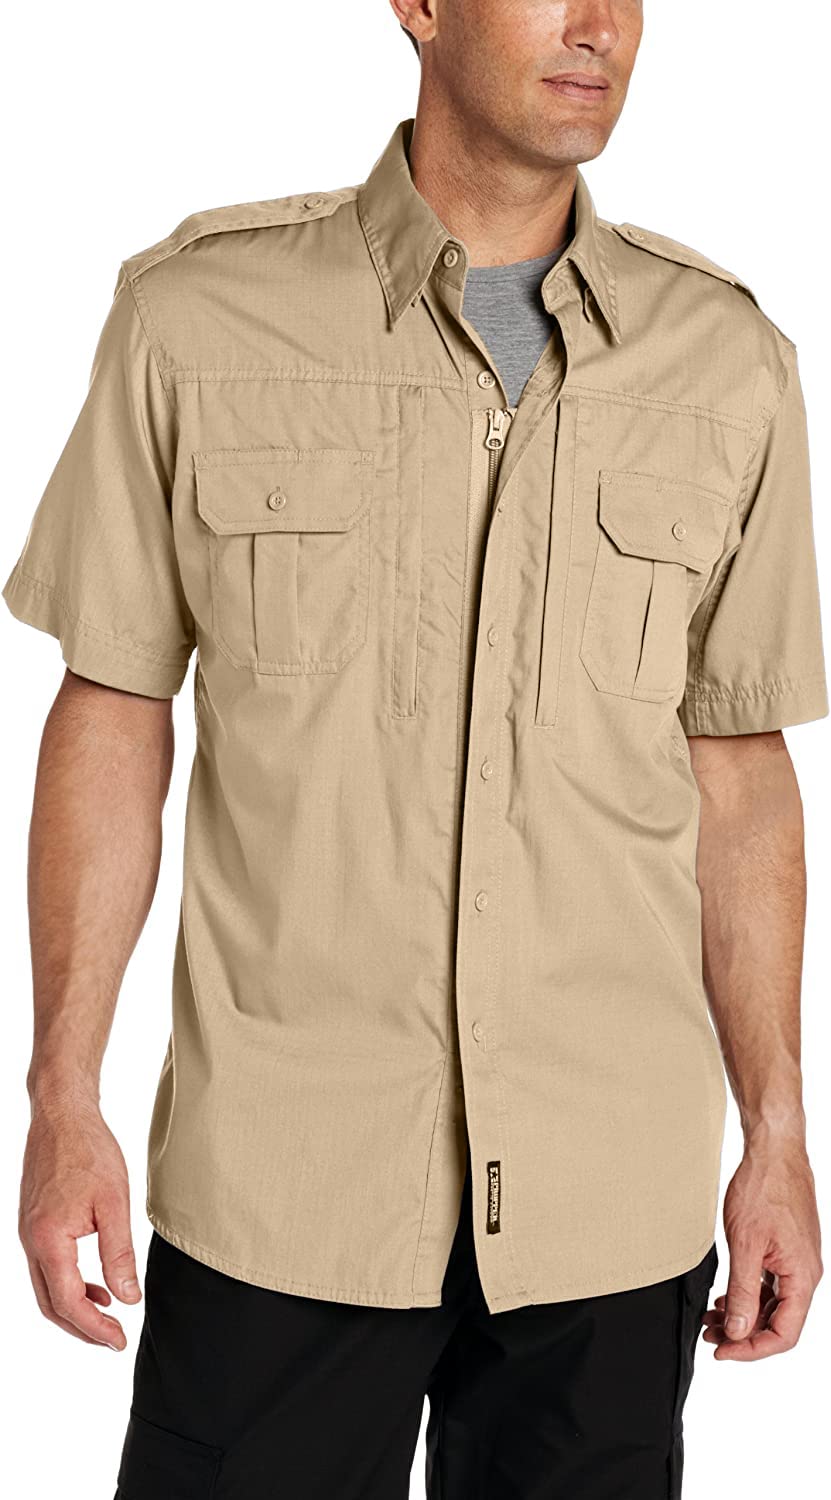 Propper Short Sleeve Tactical Shirt